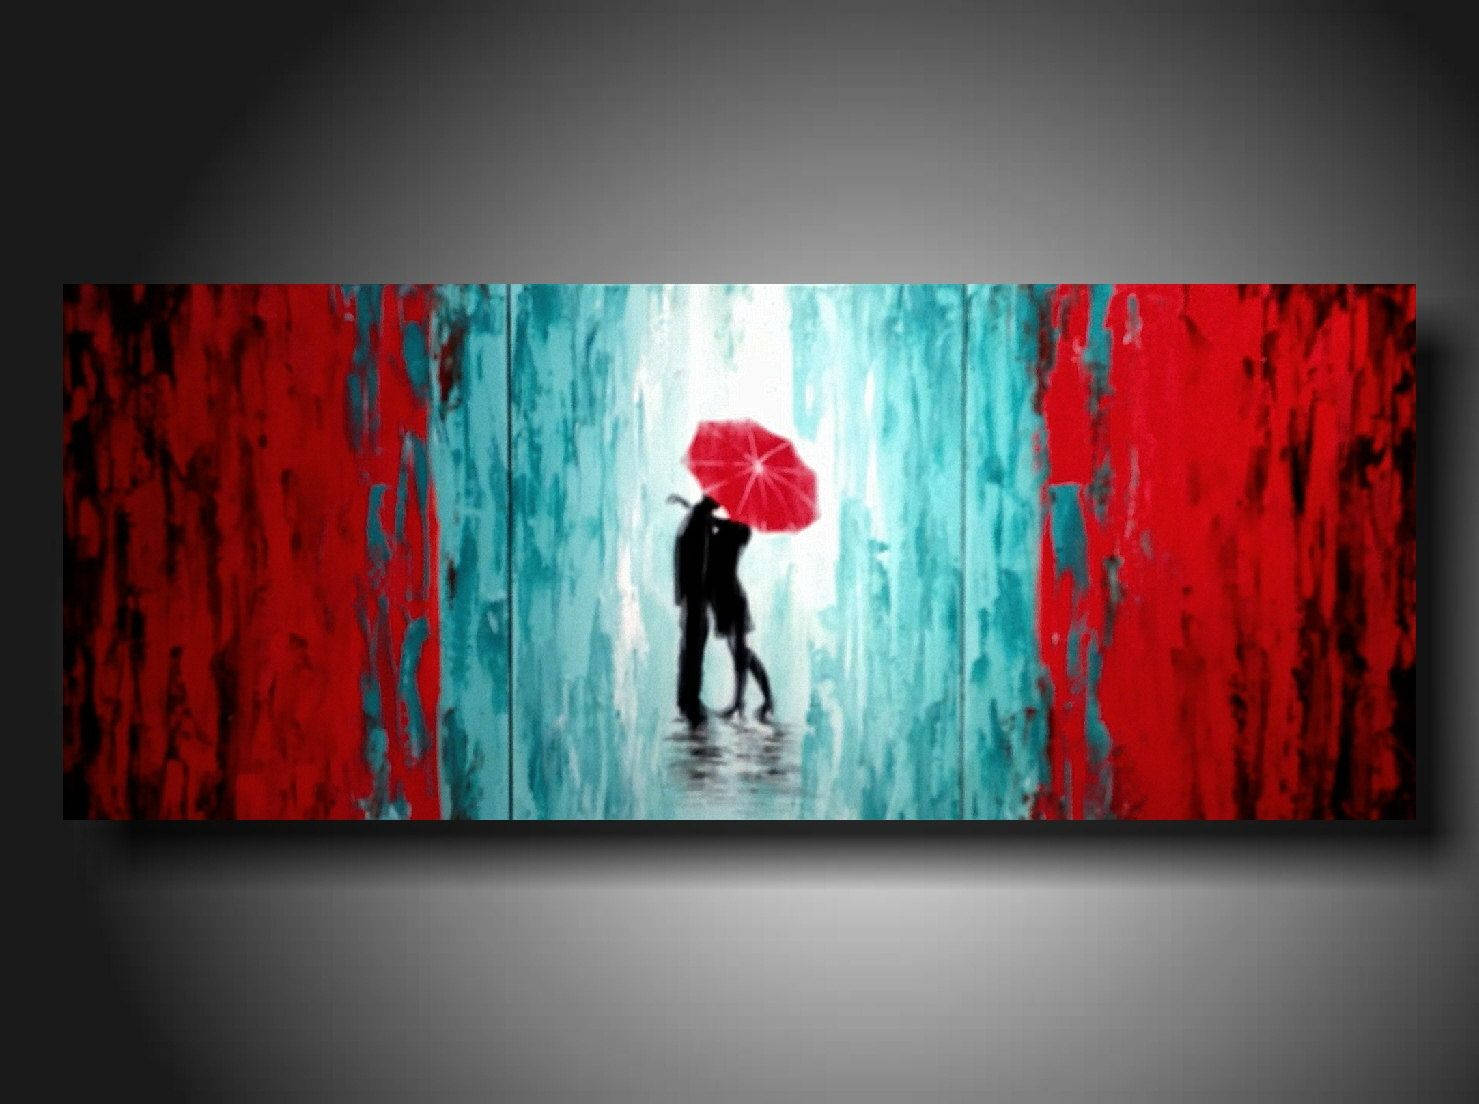 Kunstelskere under paraply. Wallpaper